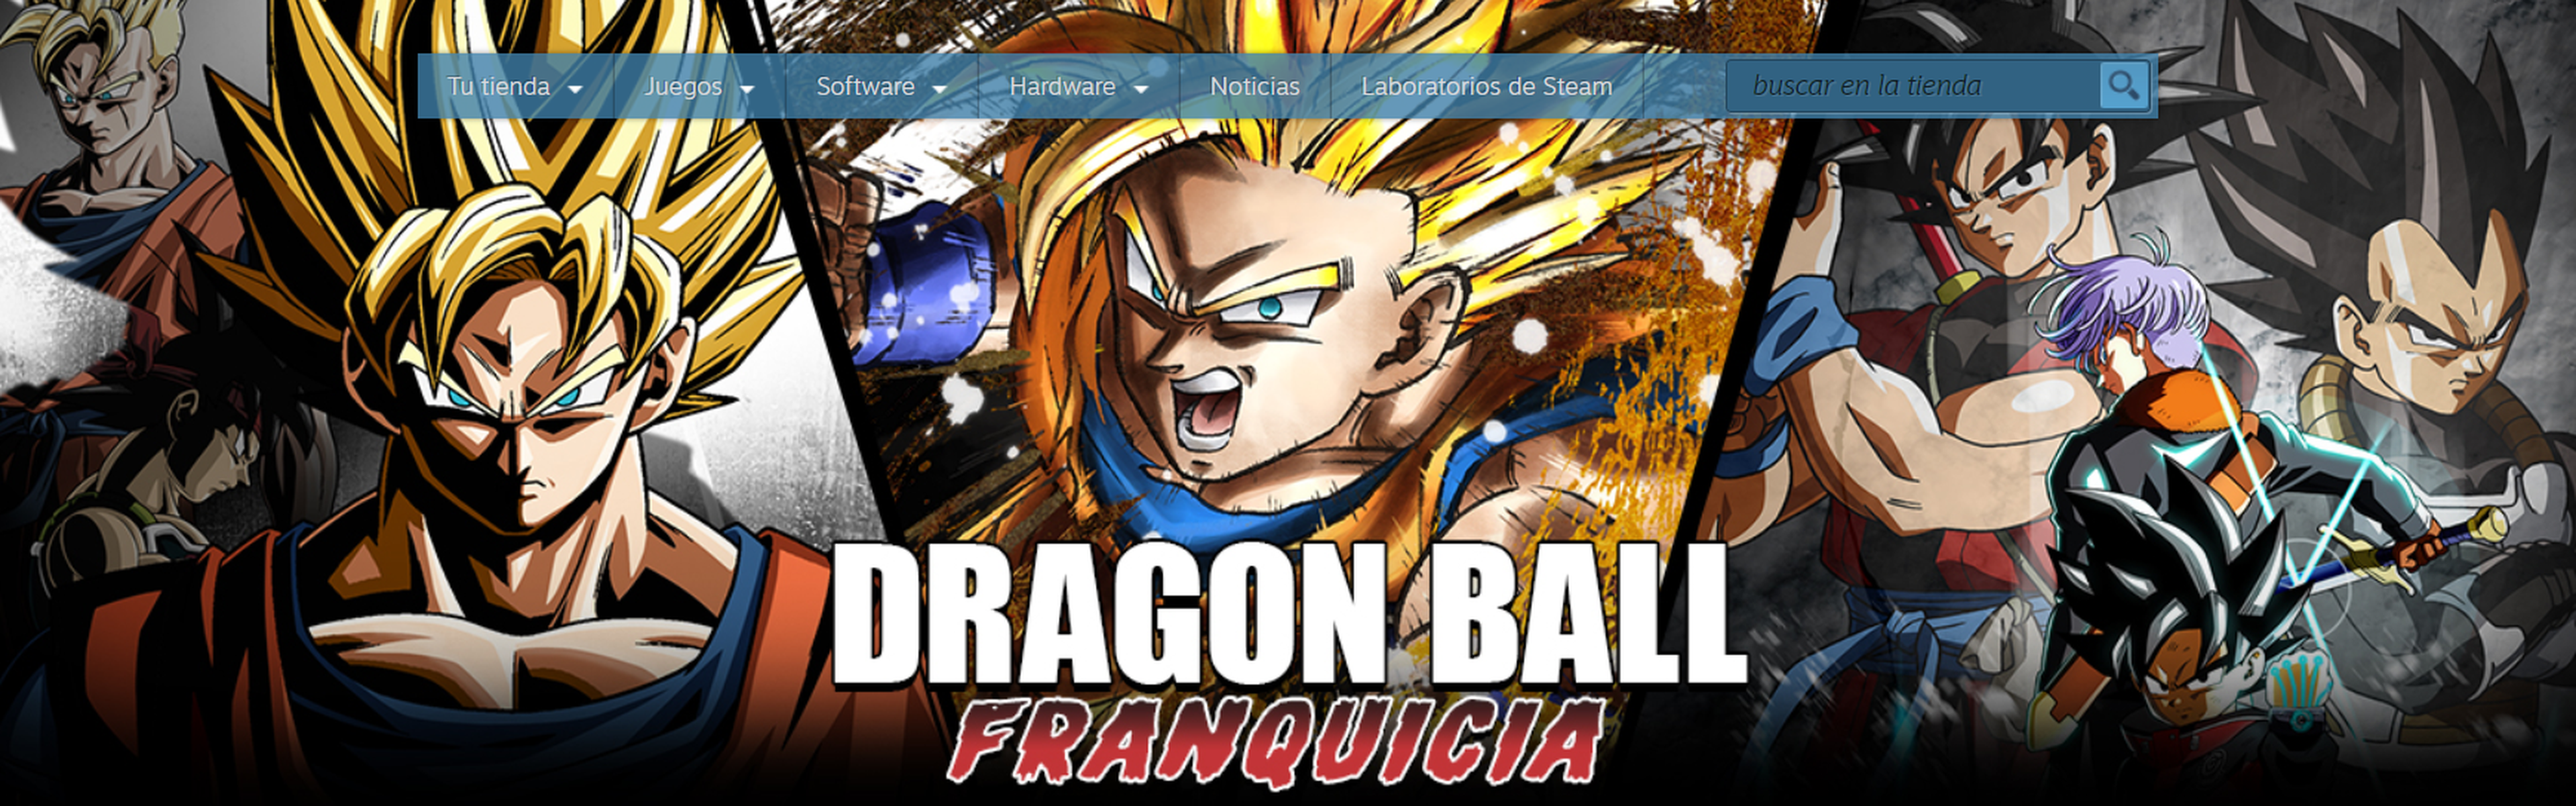 Dragon Ball Franquicia Steam